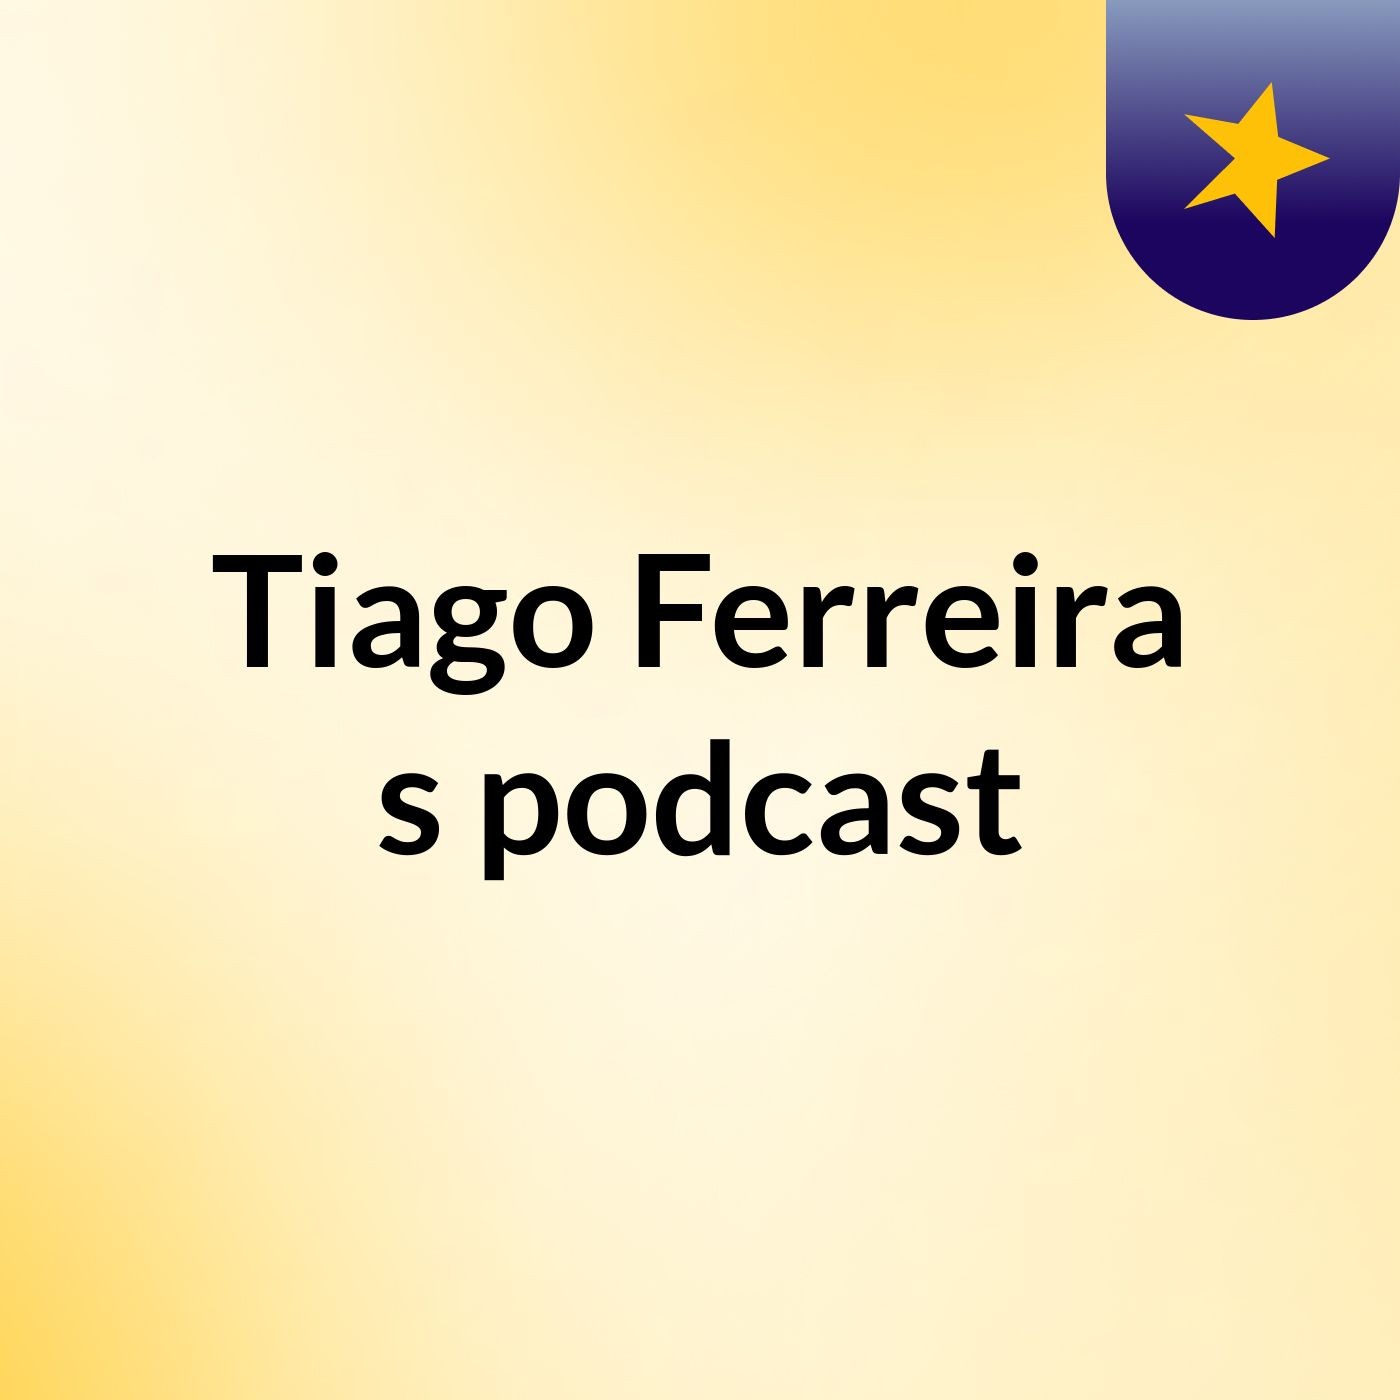 Episódio 5 - Tiago Ferreira's podcast